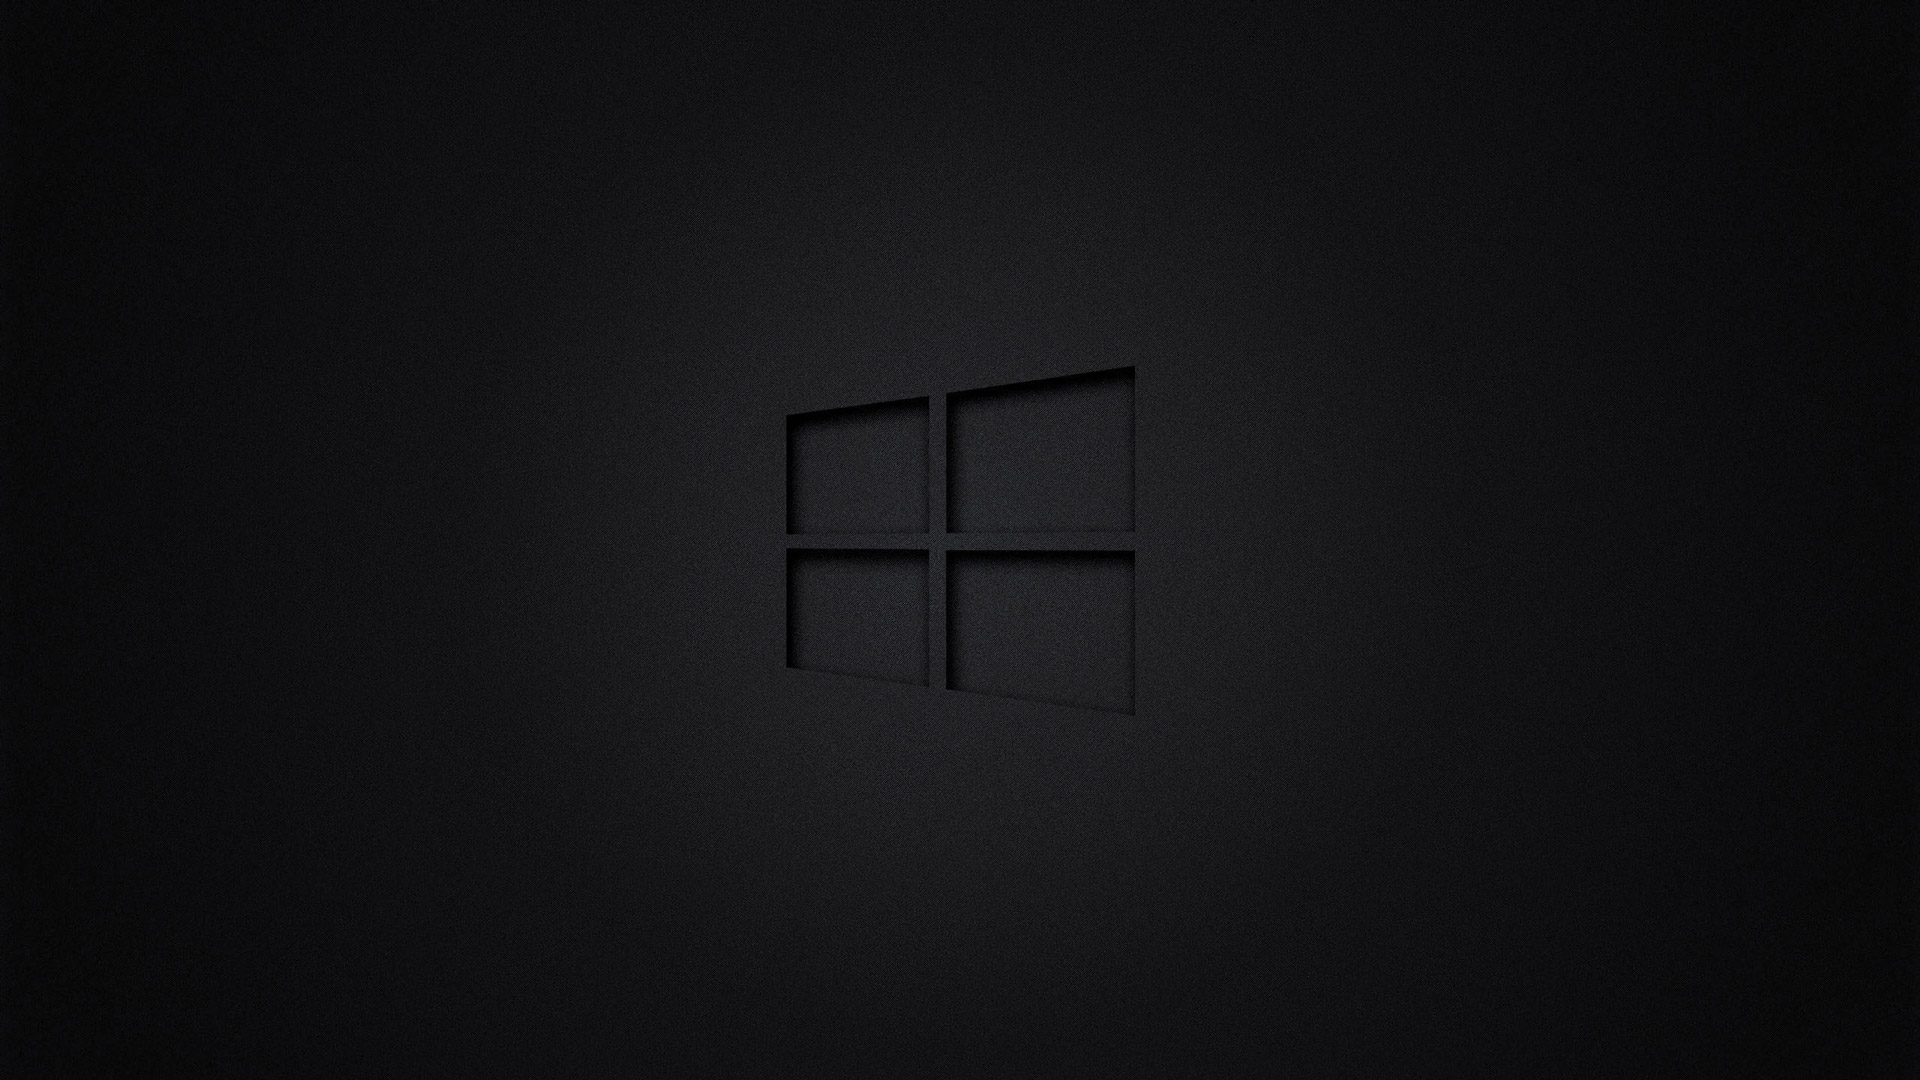 Free photo Windows 10 logo on black background